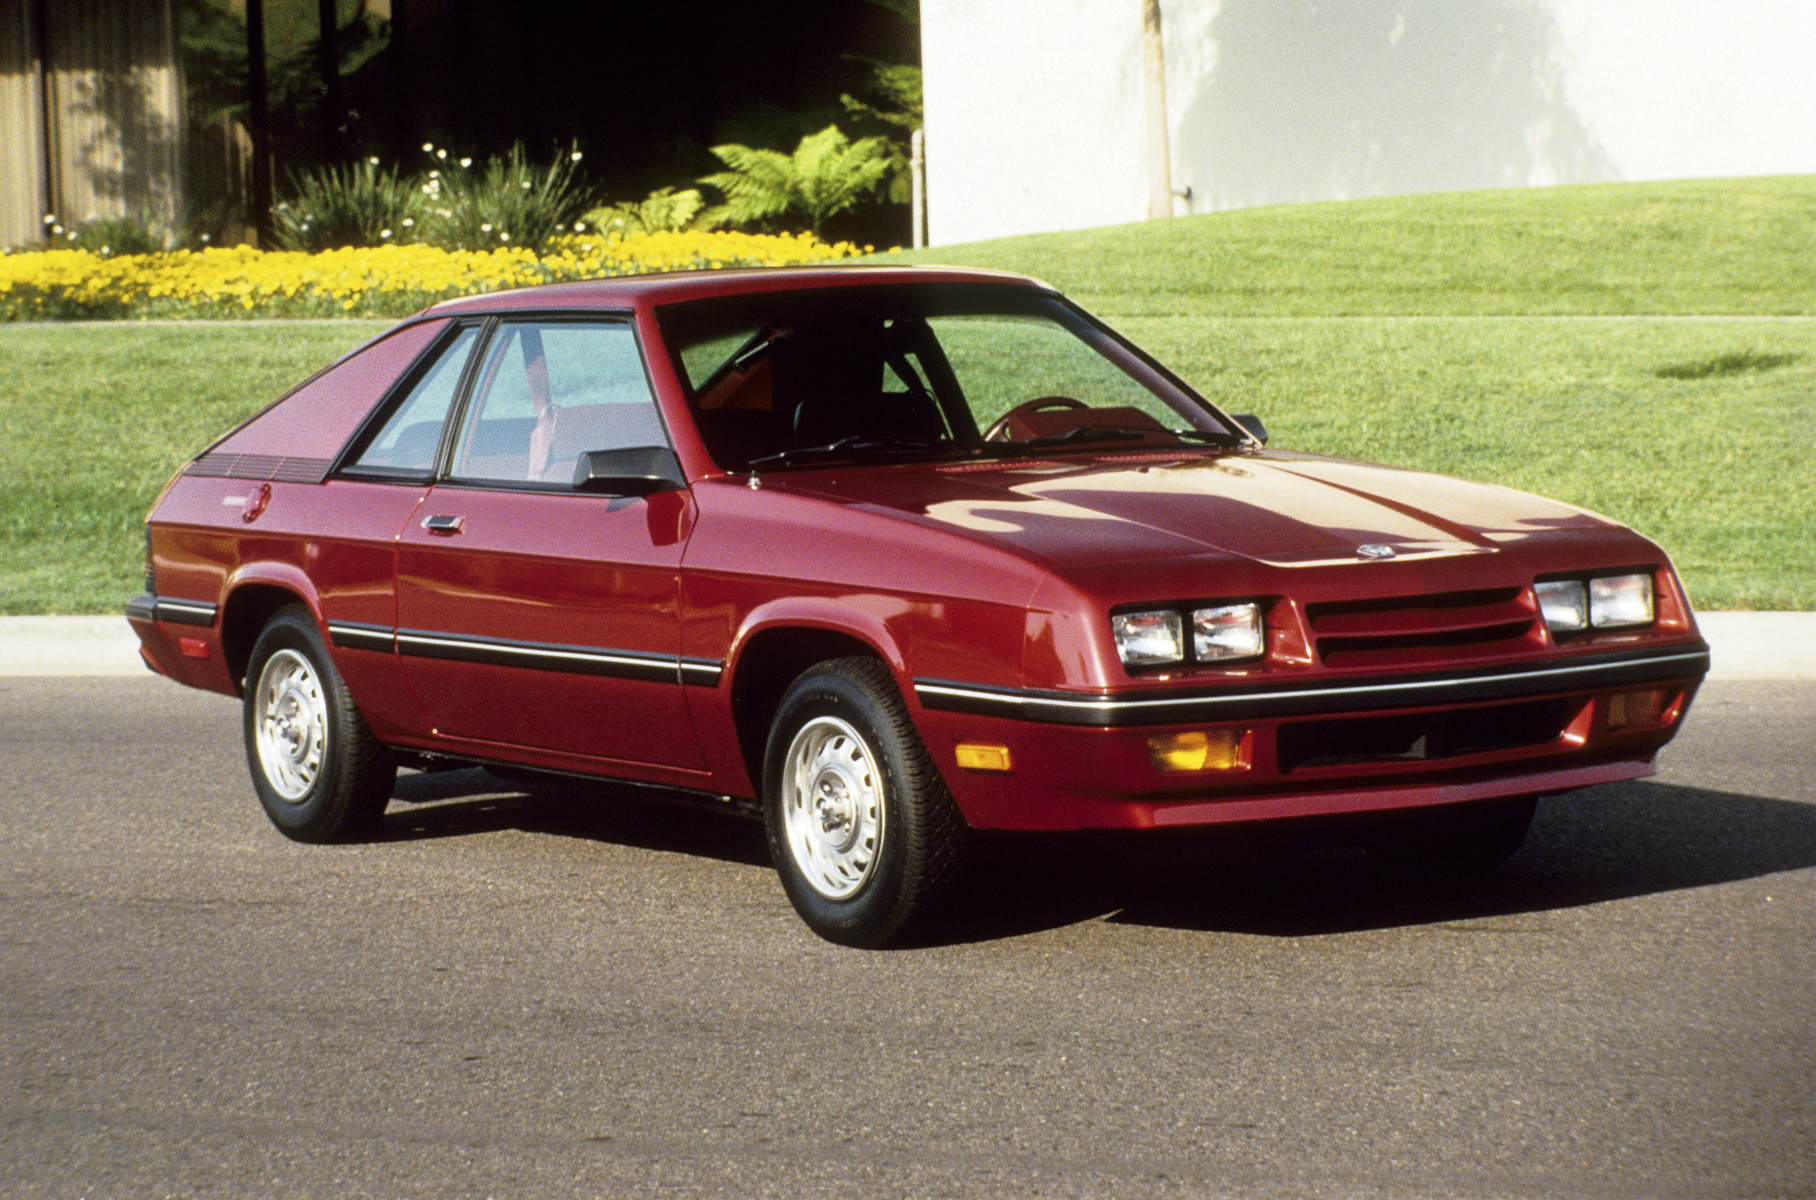 После драматичного завершения эпохи маслкаров Dodge превратил Charger в аналог люксового купе Chrysler Cordobа. А в 1981 году случилось неслыханное: некогда легендарный уличный боец обернулся маленьким переднеприводным фастбеком.